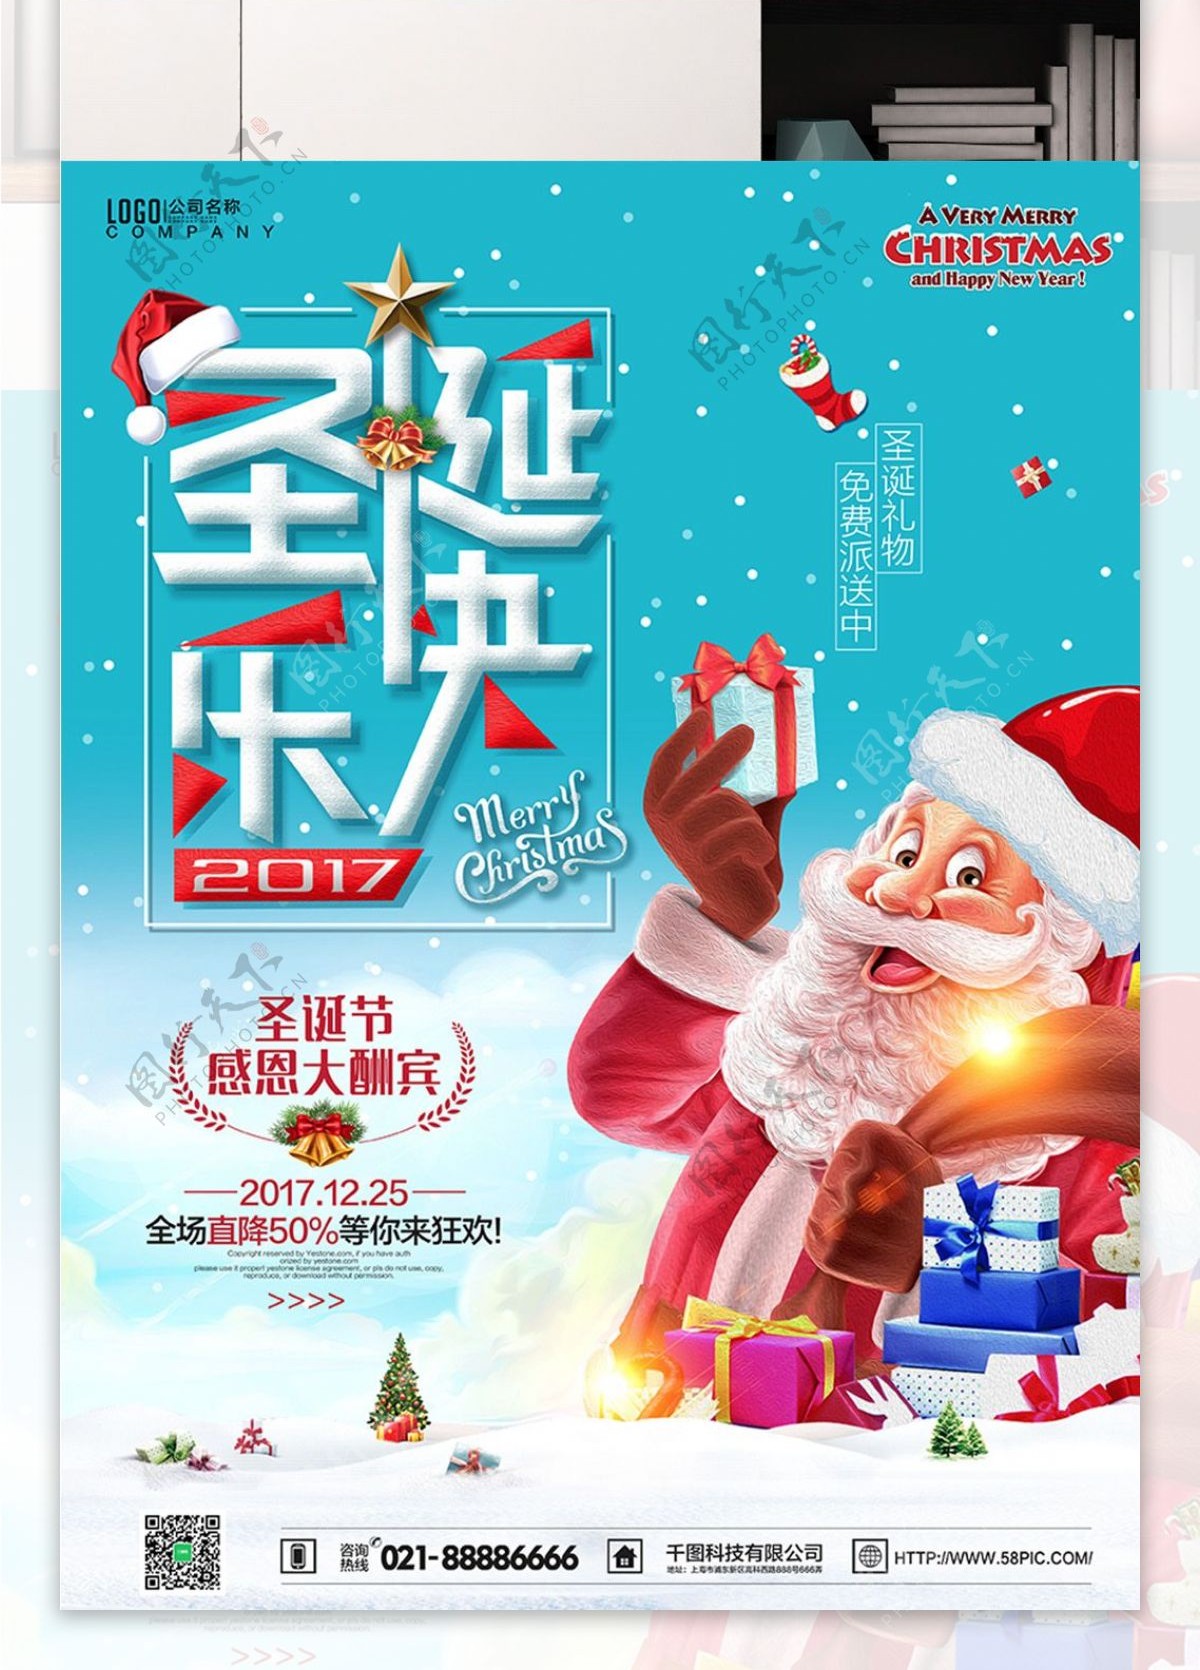 圣诞快乐蓝色清新大气活动促销海报